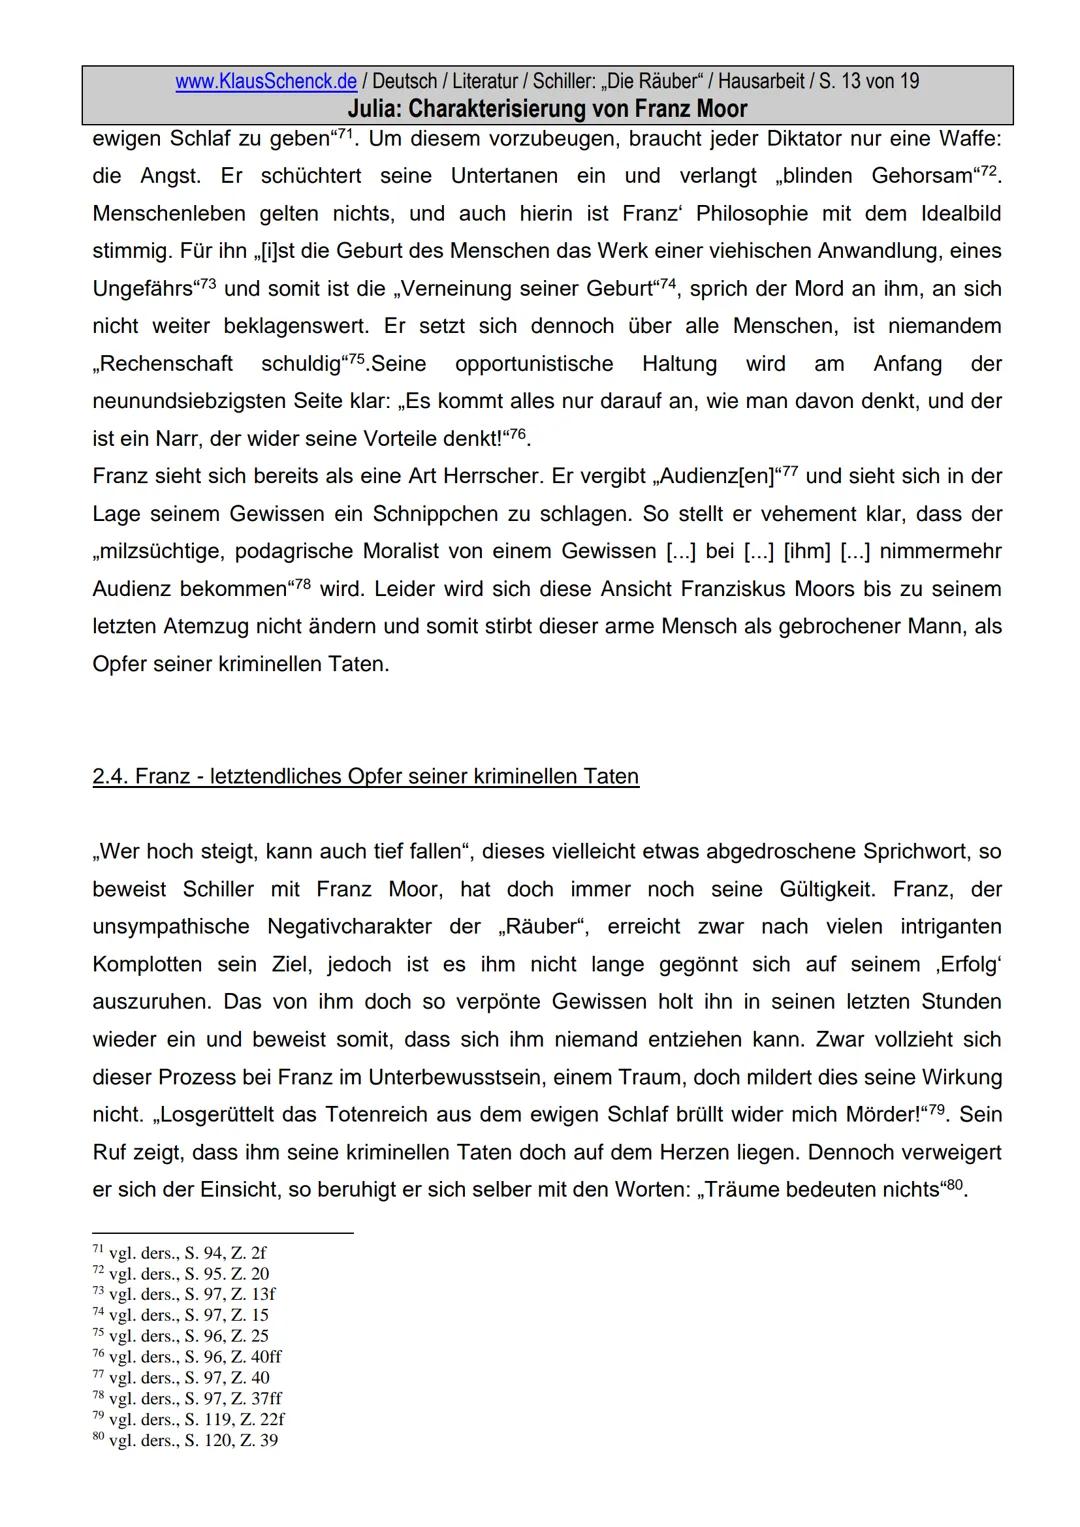 www.KlausSchenck.de / Deutsch / Literatur / Schiller: „Die Räuber" / Hausarbeit / S. 2 von 19
Julia: Charakterisierung von Franz Moor
Inhalt